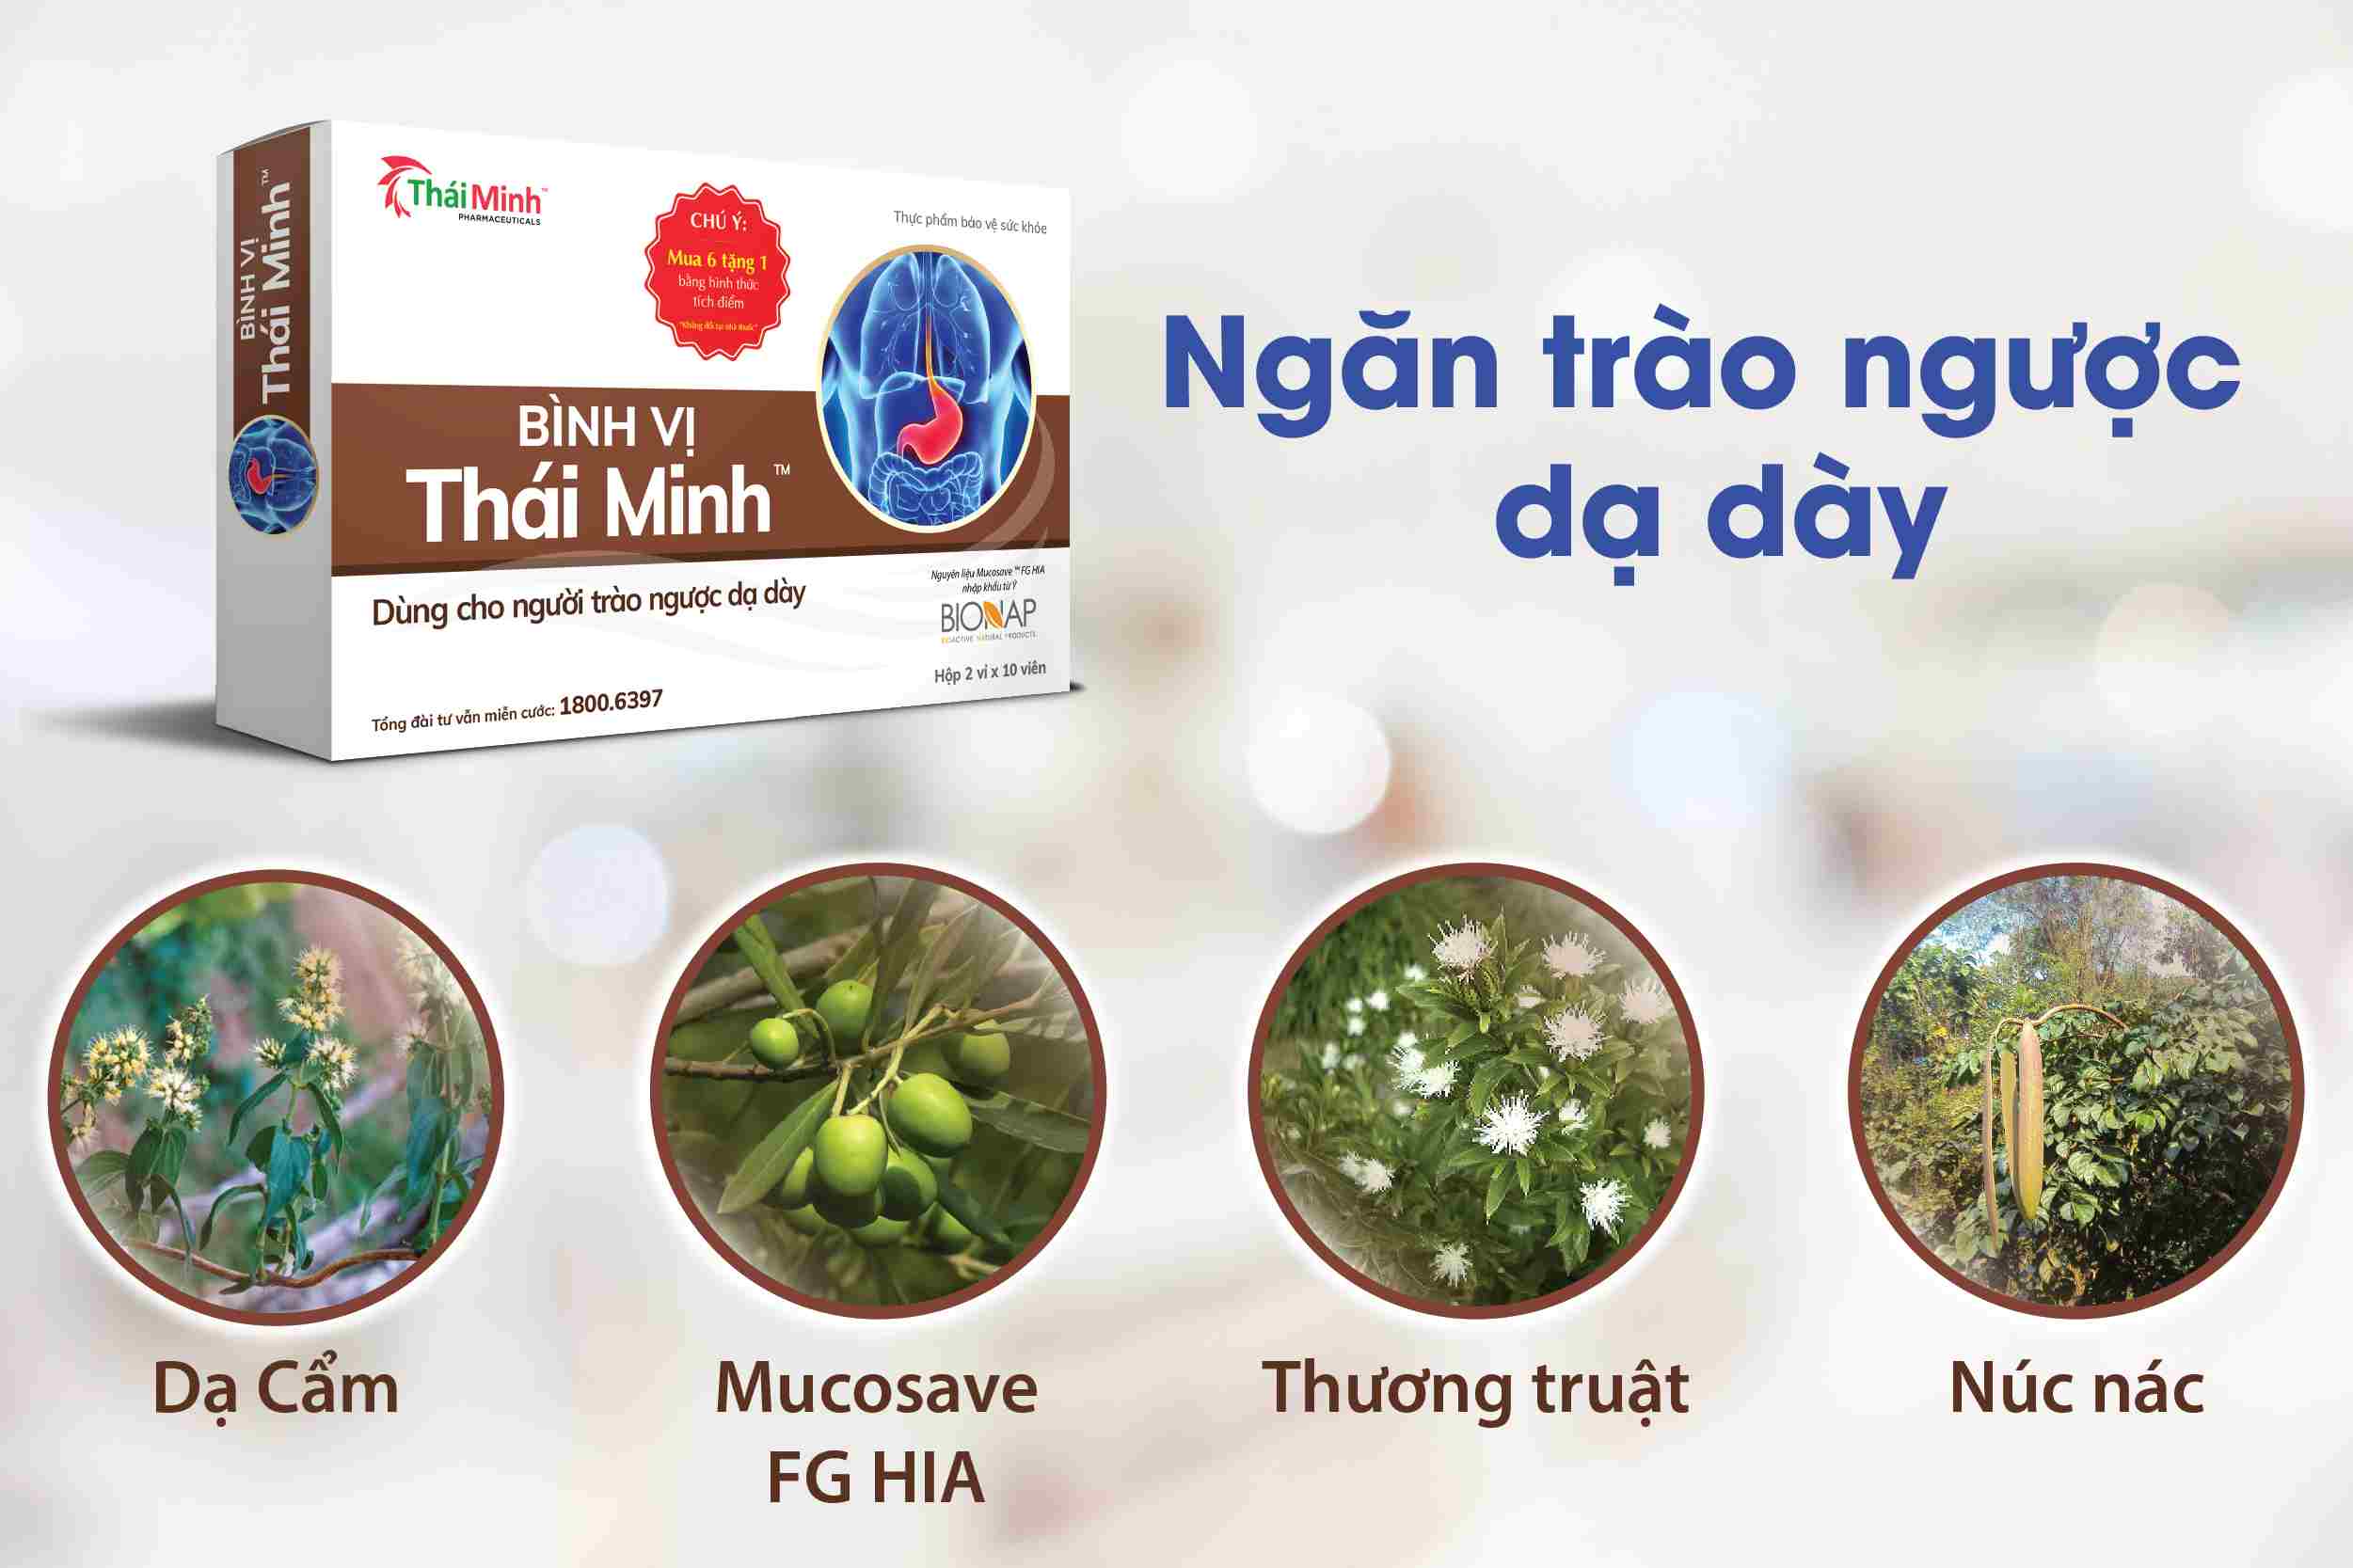 Bình Vị Thái Minh - Giải pháp hiệu quả cho người bị trào ngược dạ dày 1